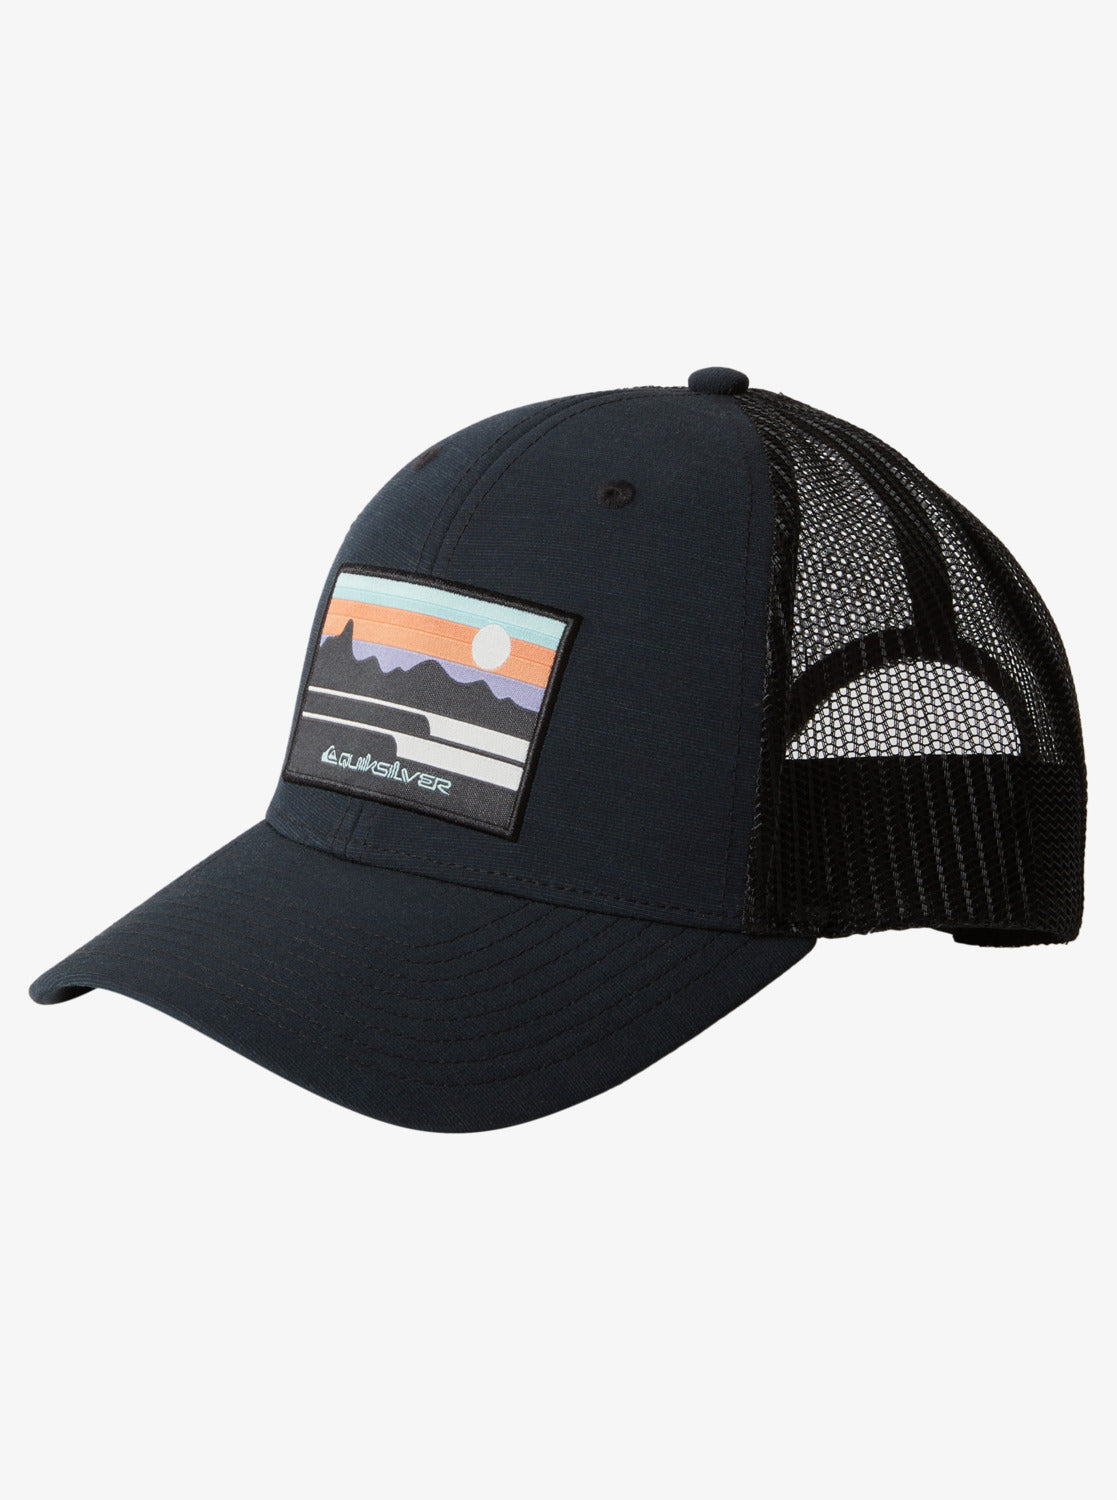 Fabled Season Trucker Hat - Black